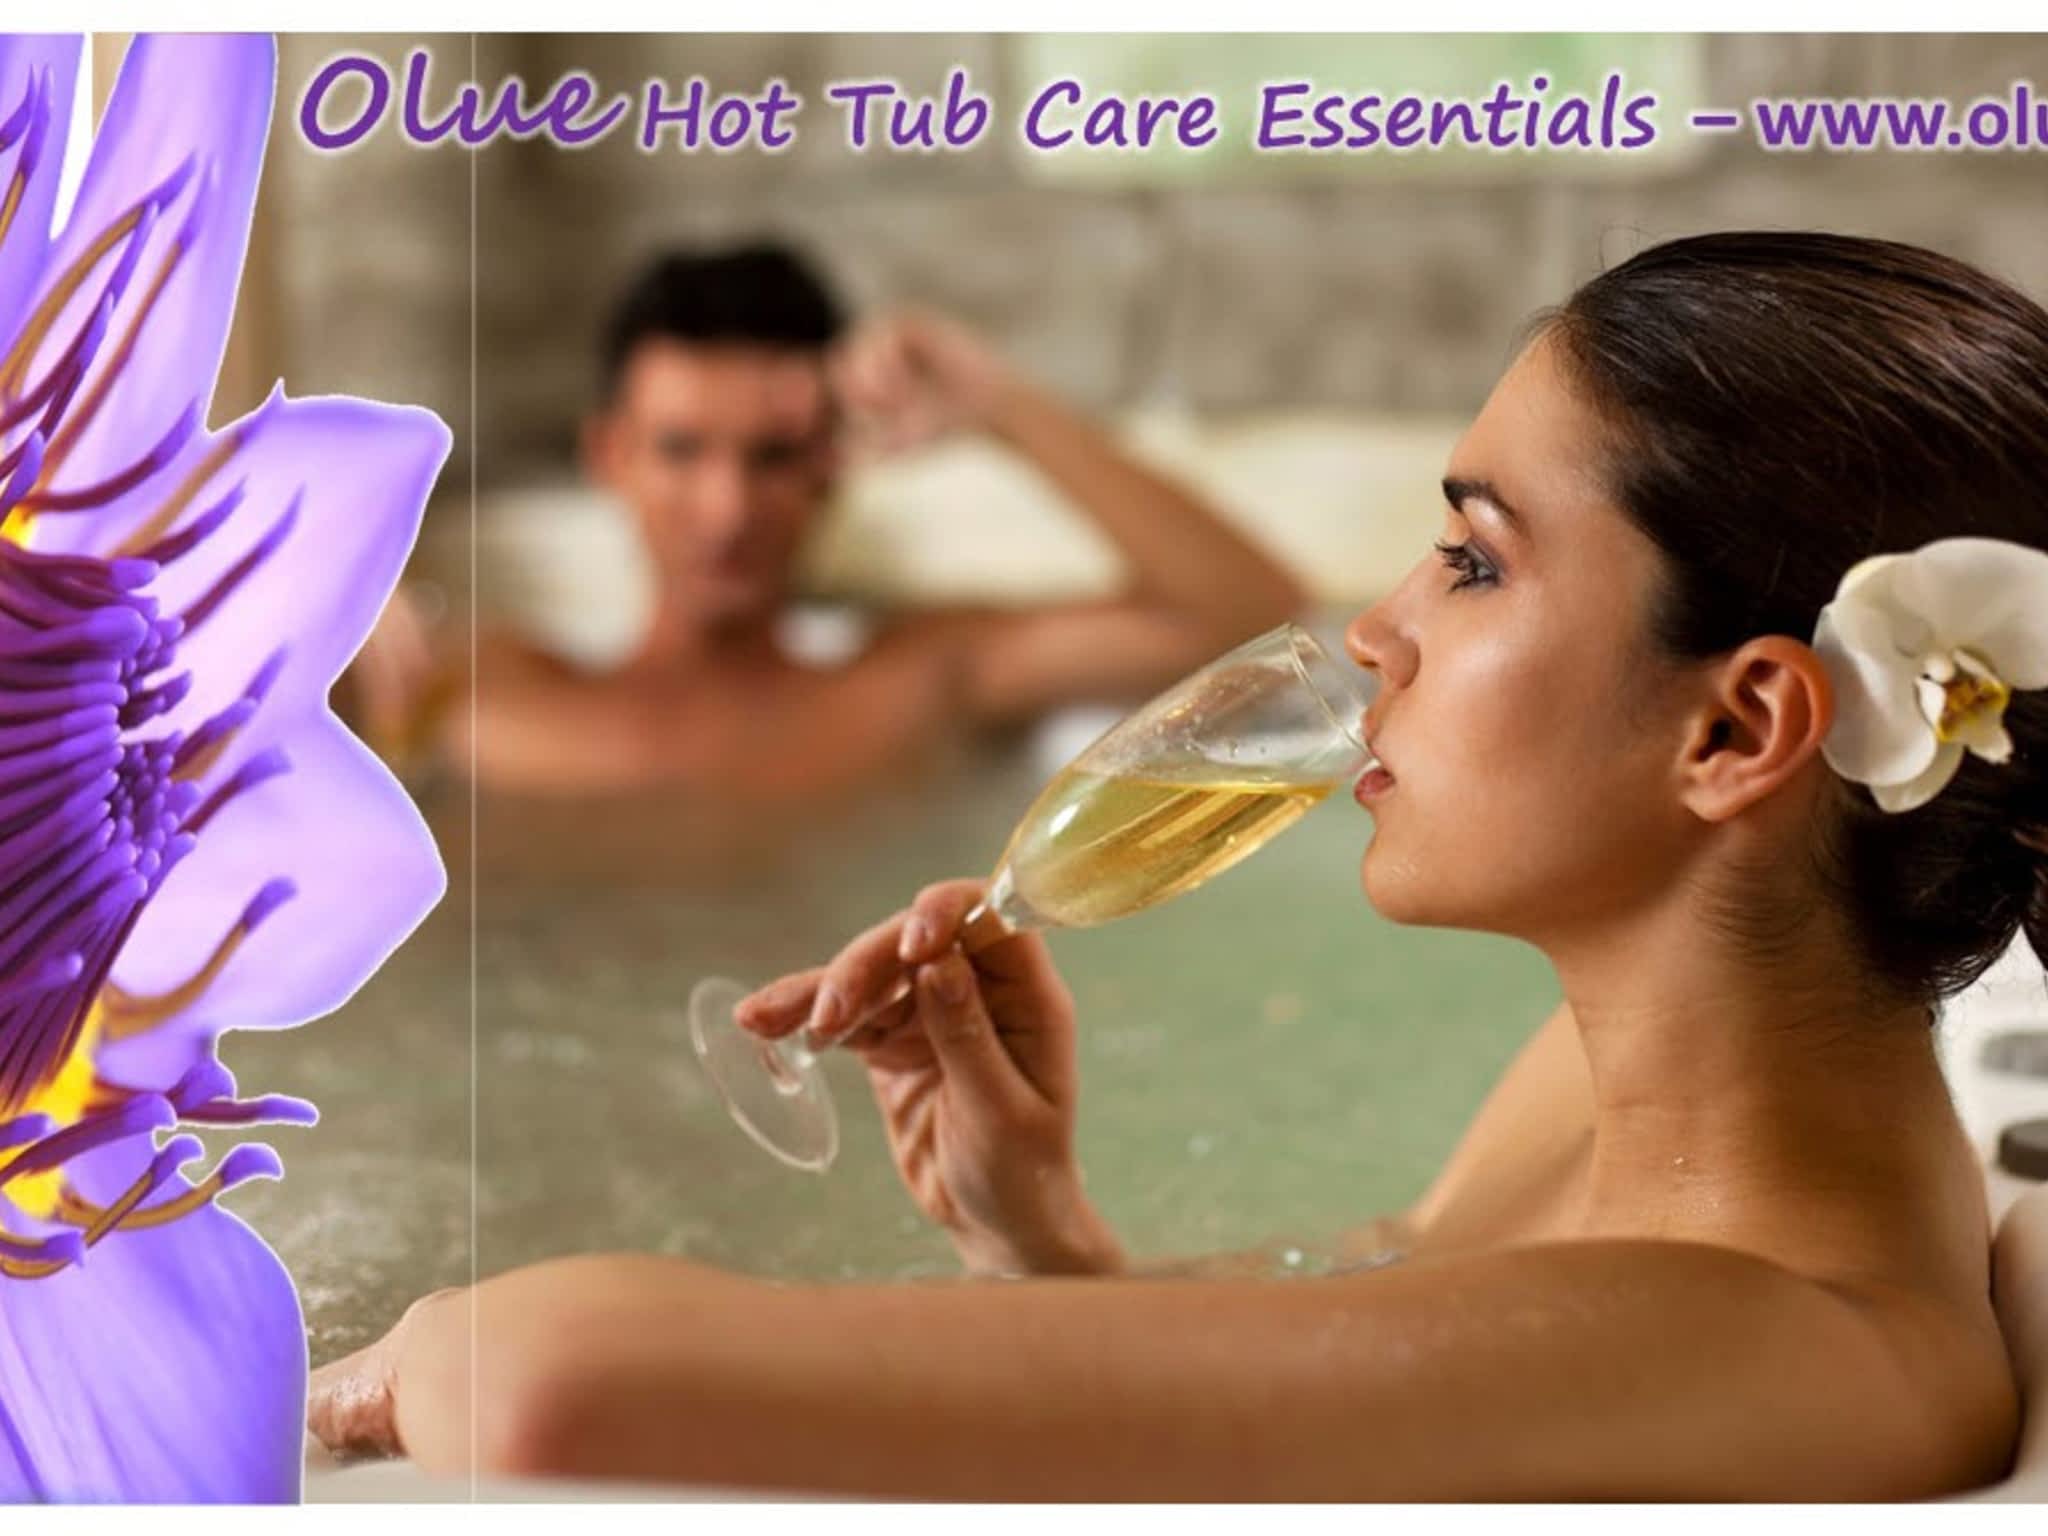 photo Olue Care Essentials Ltd